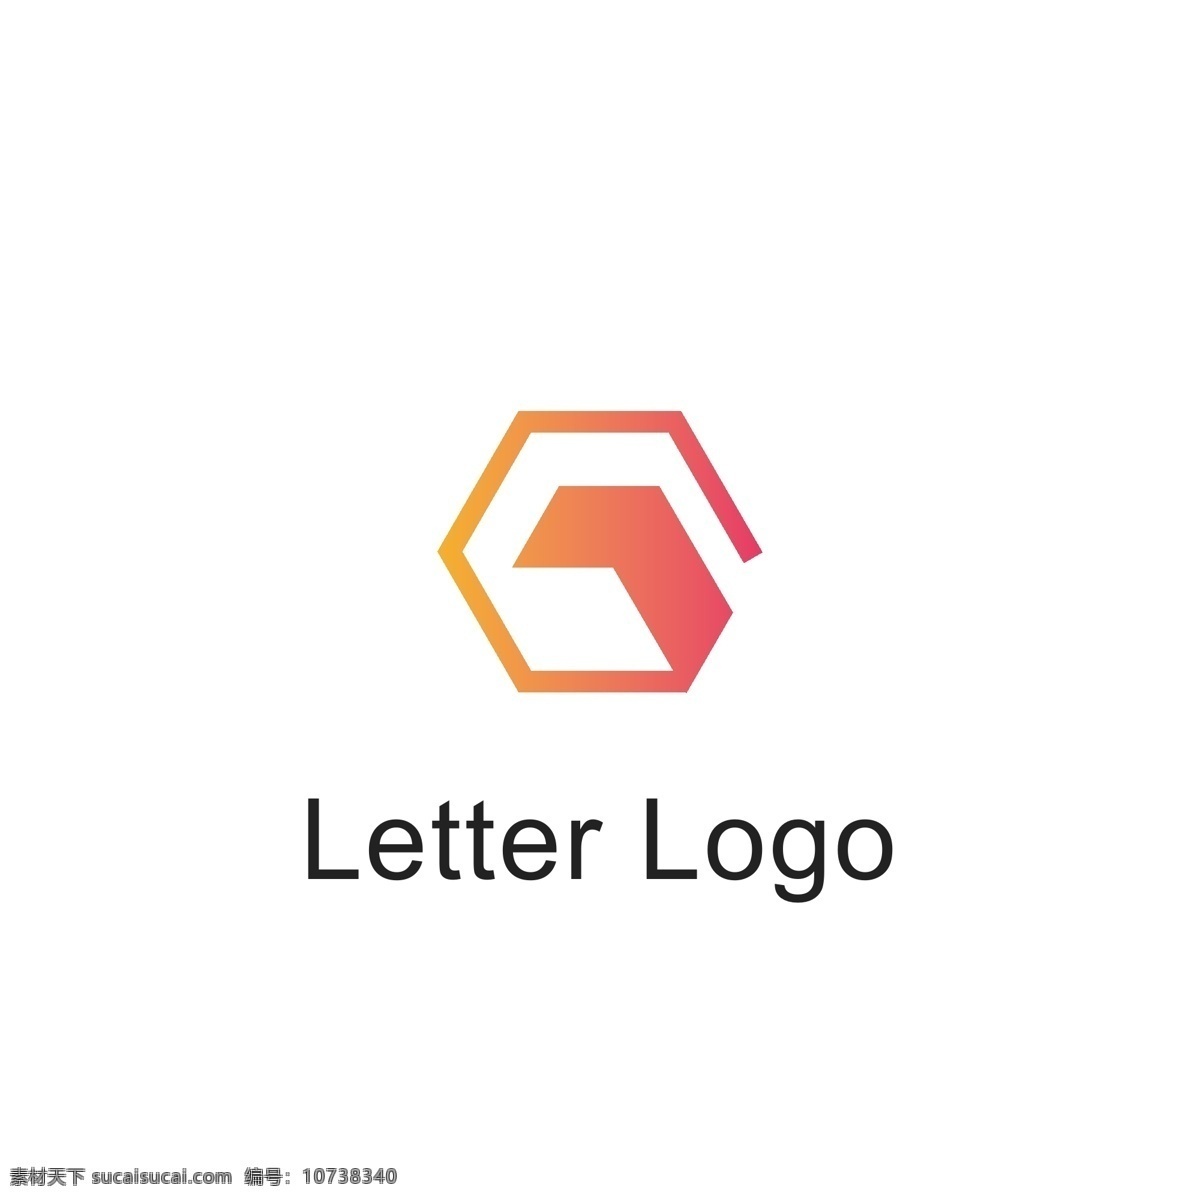 字母 变形 logo 字母logo 字母变形 字母g 渐变logo logo设计 简约时尚 标志设计 标识设计 ai矢量